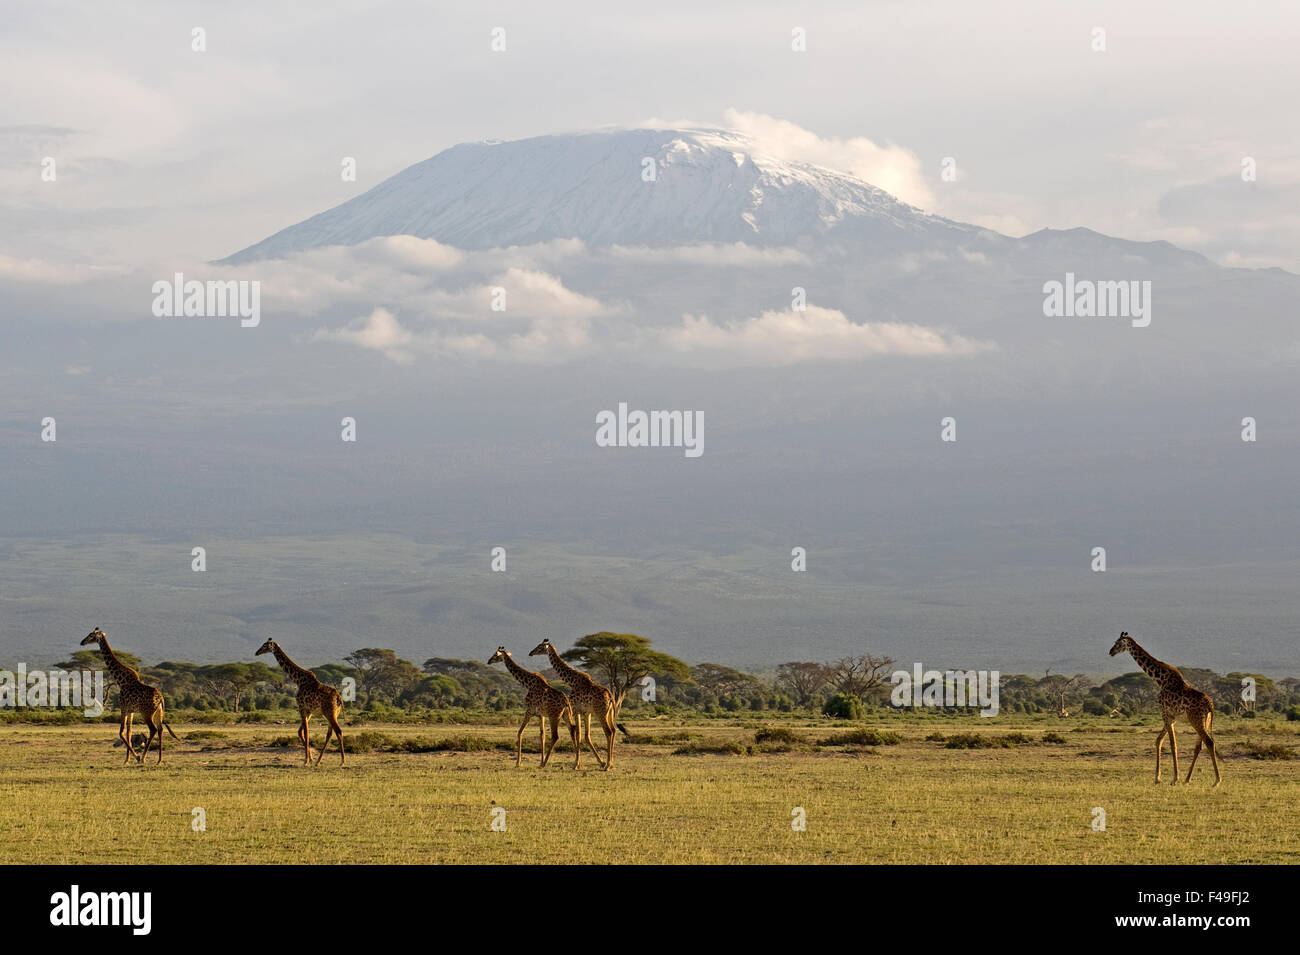 Le groupe girafe Rothschild avec le Kilimandjaro en arrière-plan. Parc National d'Amboseli, Kenya, Africa Banque D'Images